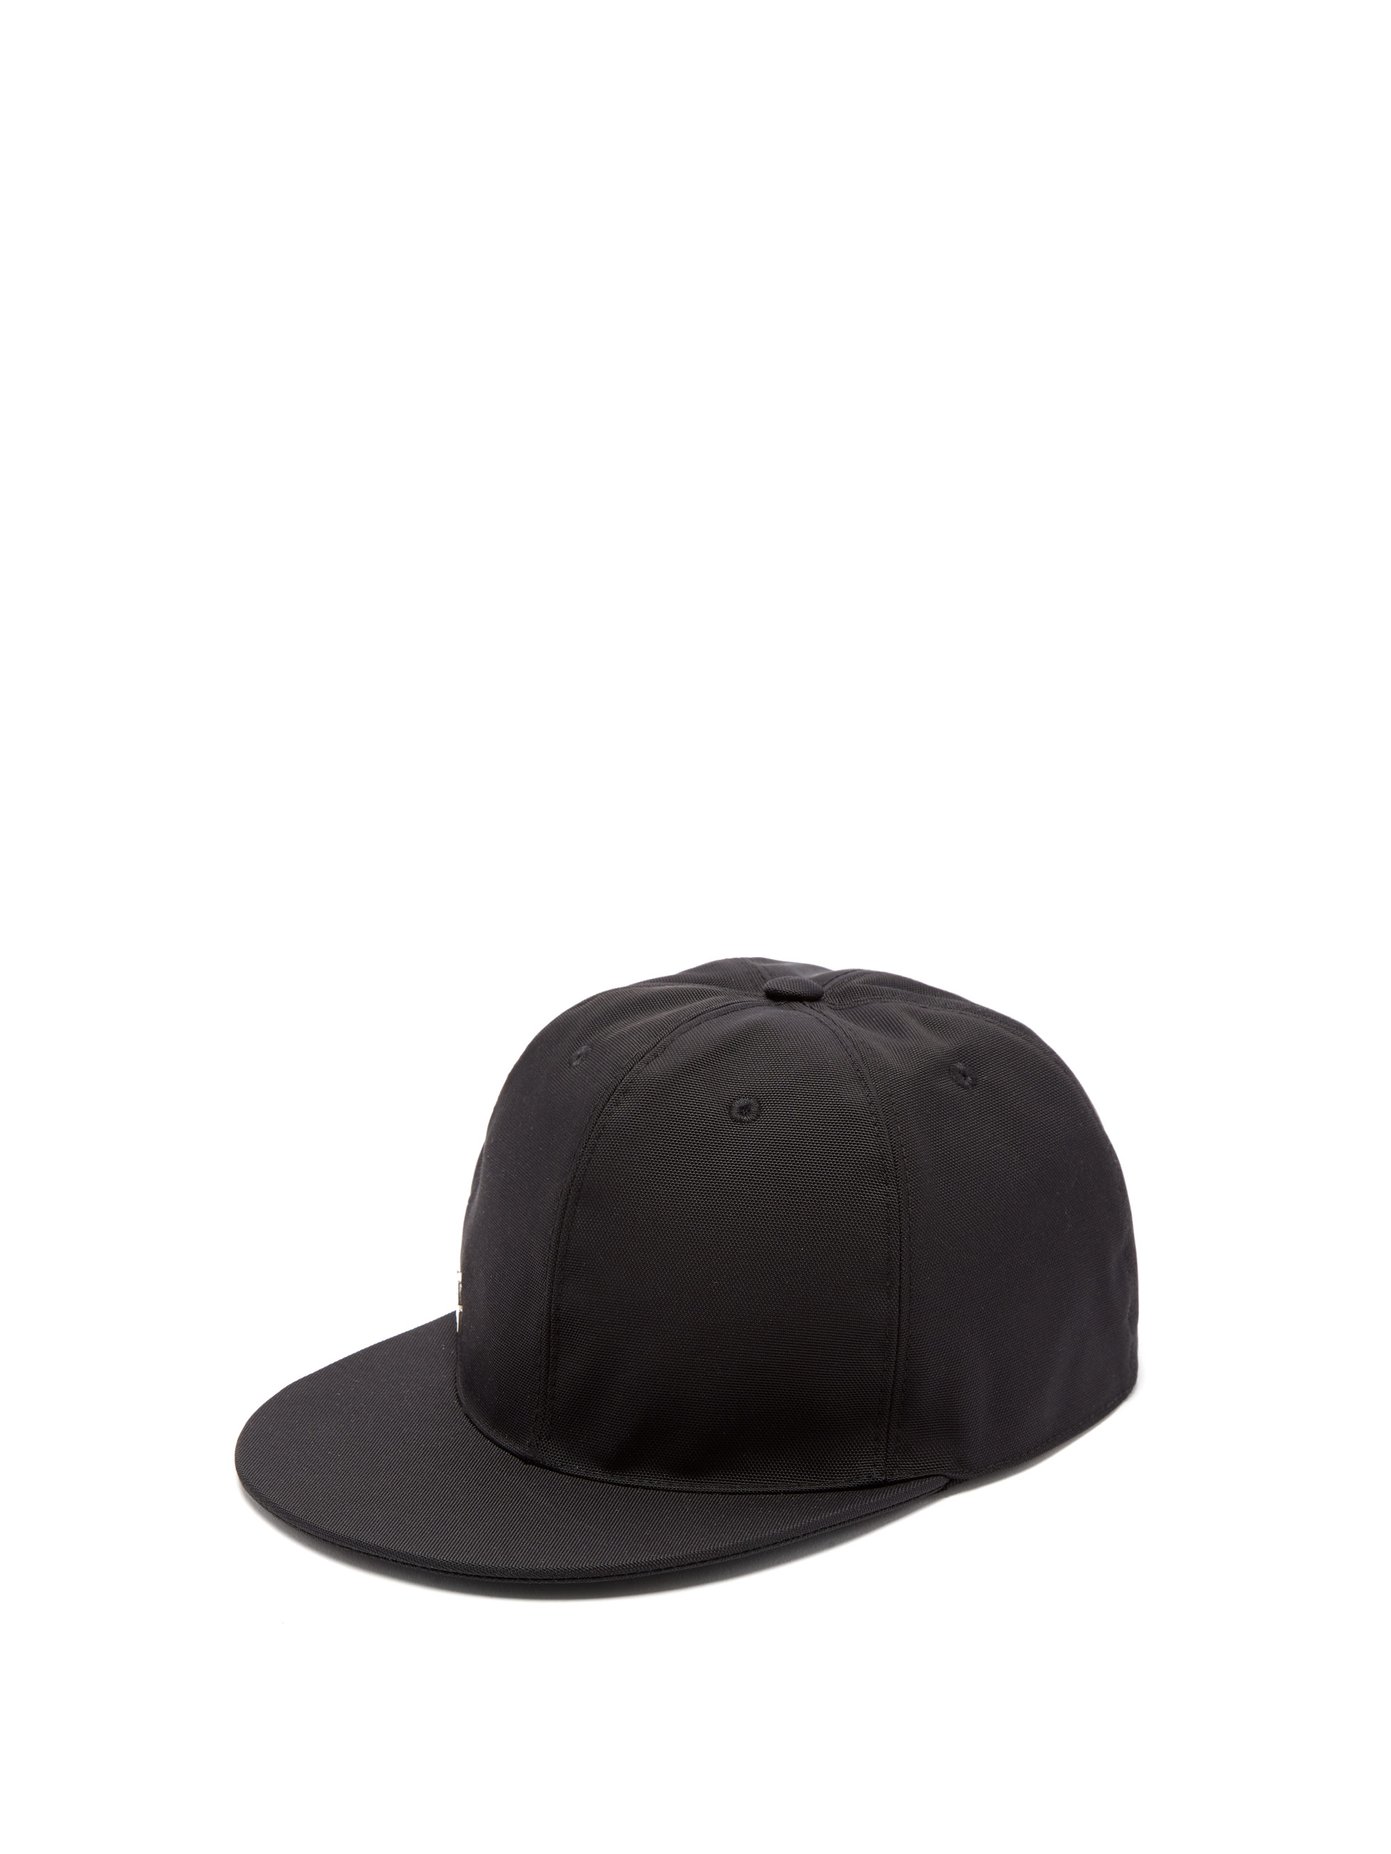 givenchy 4g cap